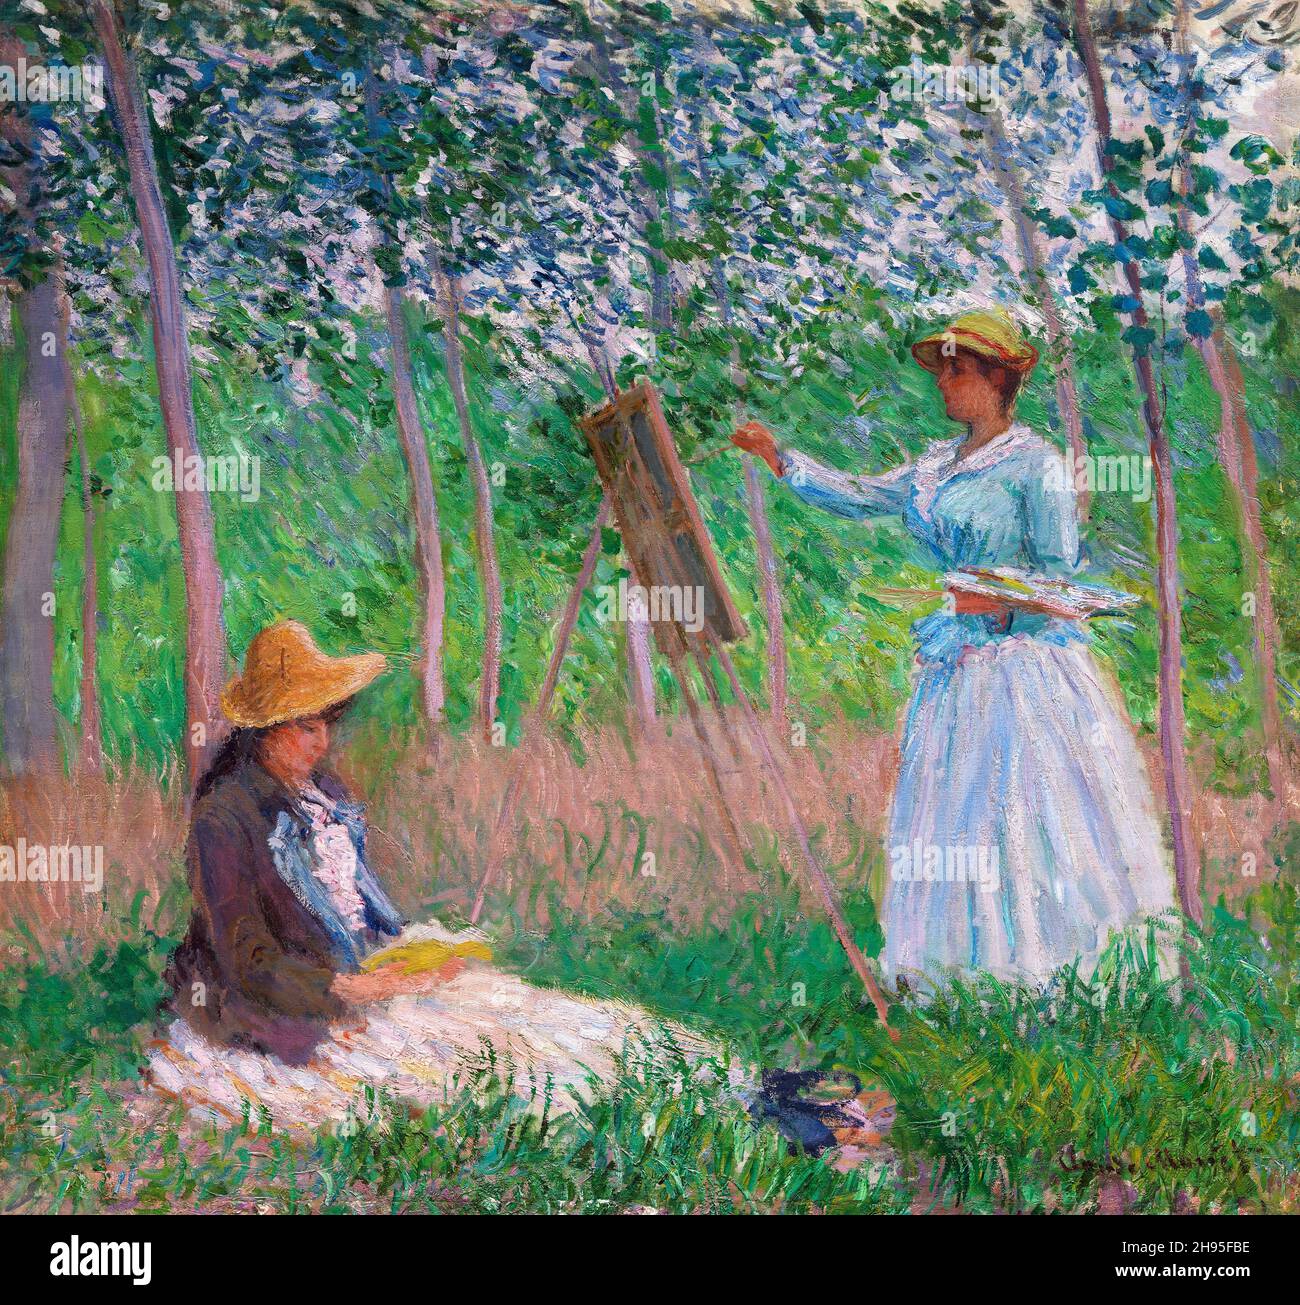 Dans les bois de Giverny : Blanche Hoschedé à son Easel avec Suzanne Hoschedé lecture de Claude Monet (1840-1926), peinture, huile sur toile, 1887 Banque D'Images